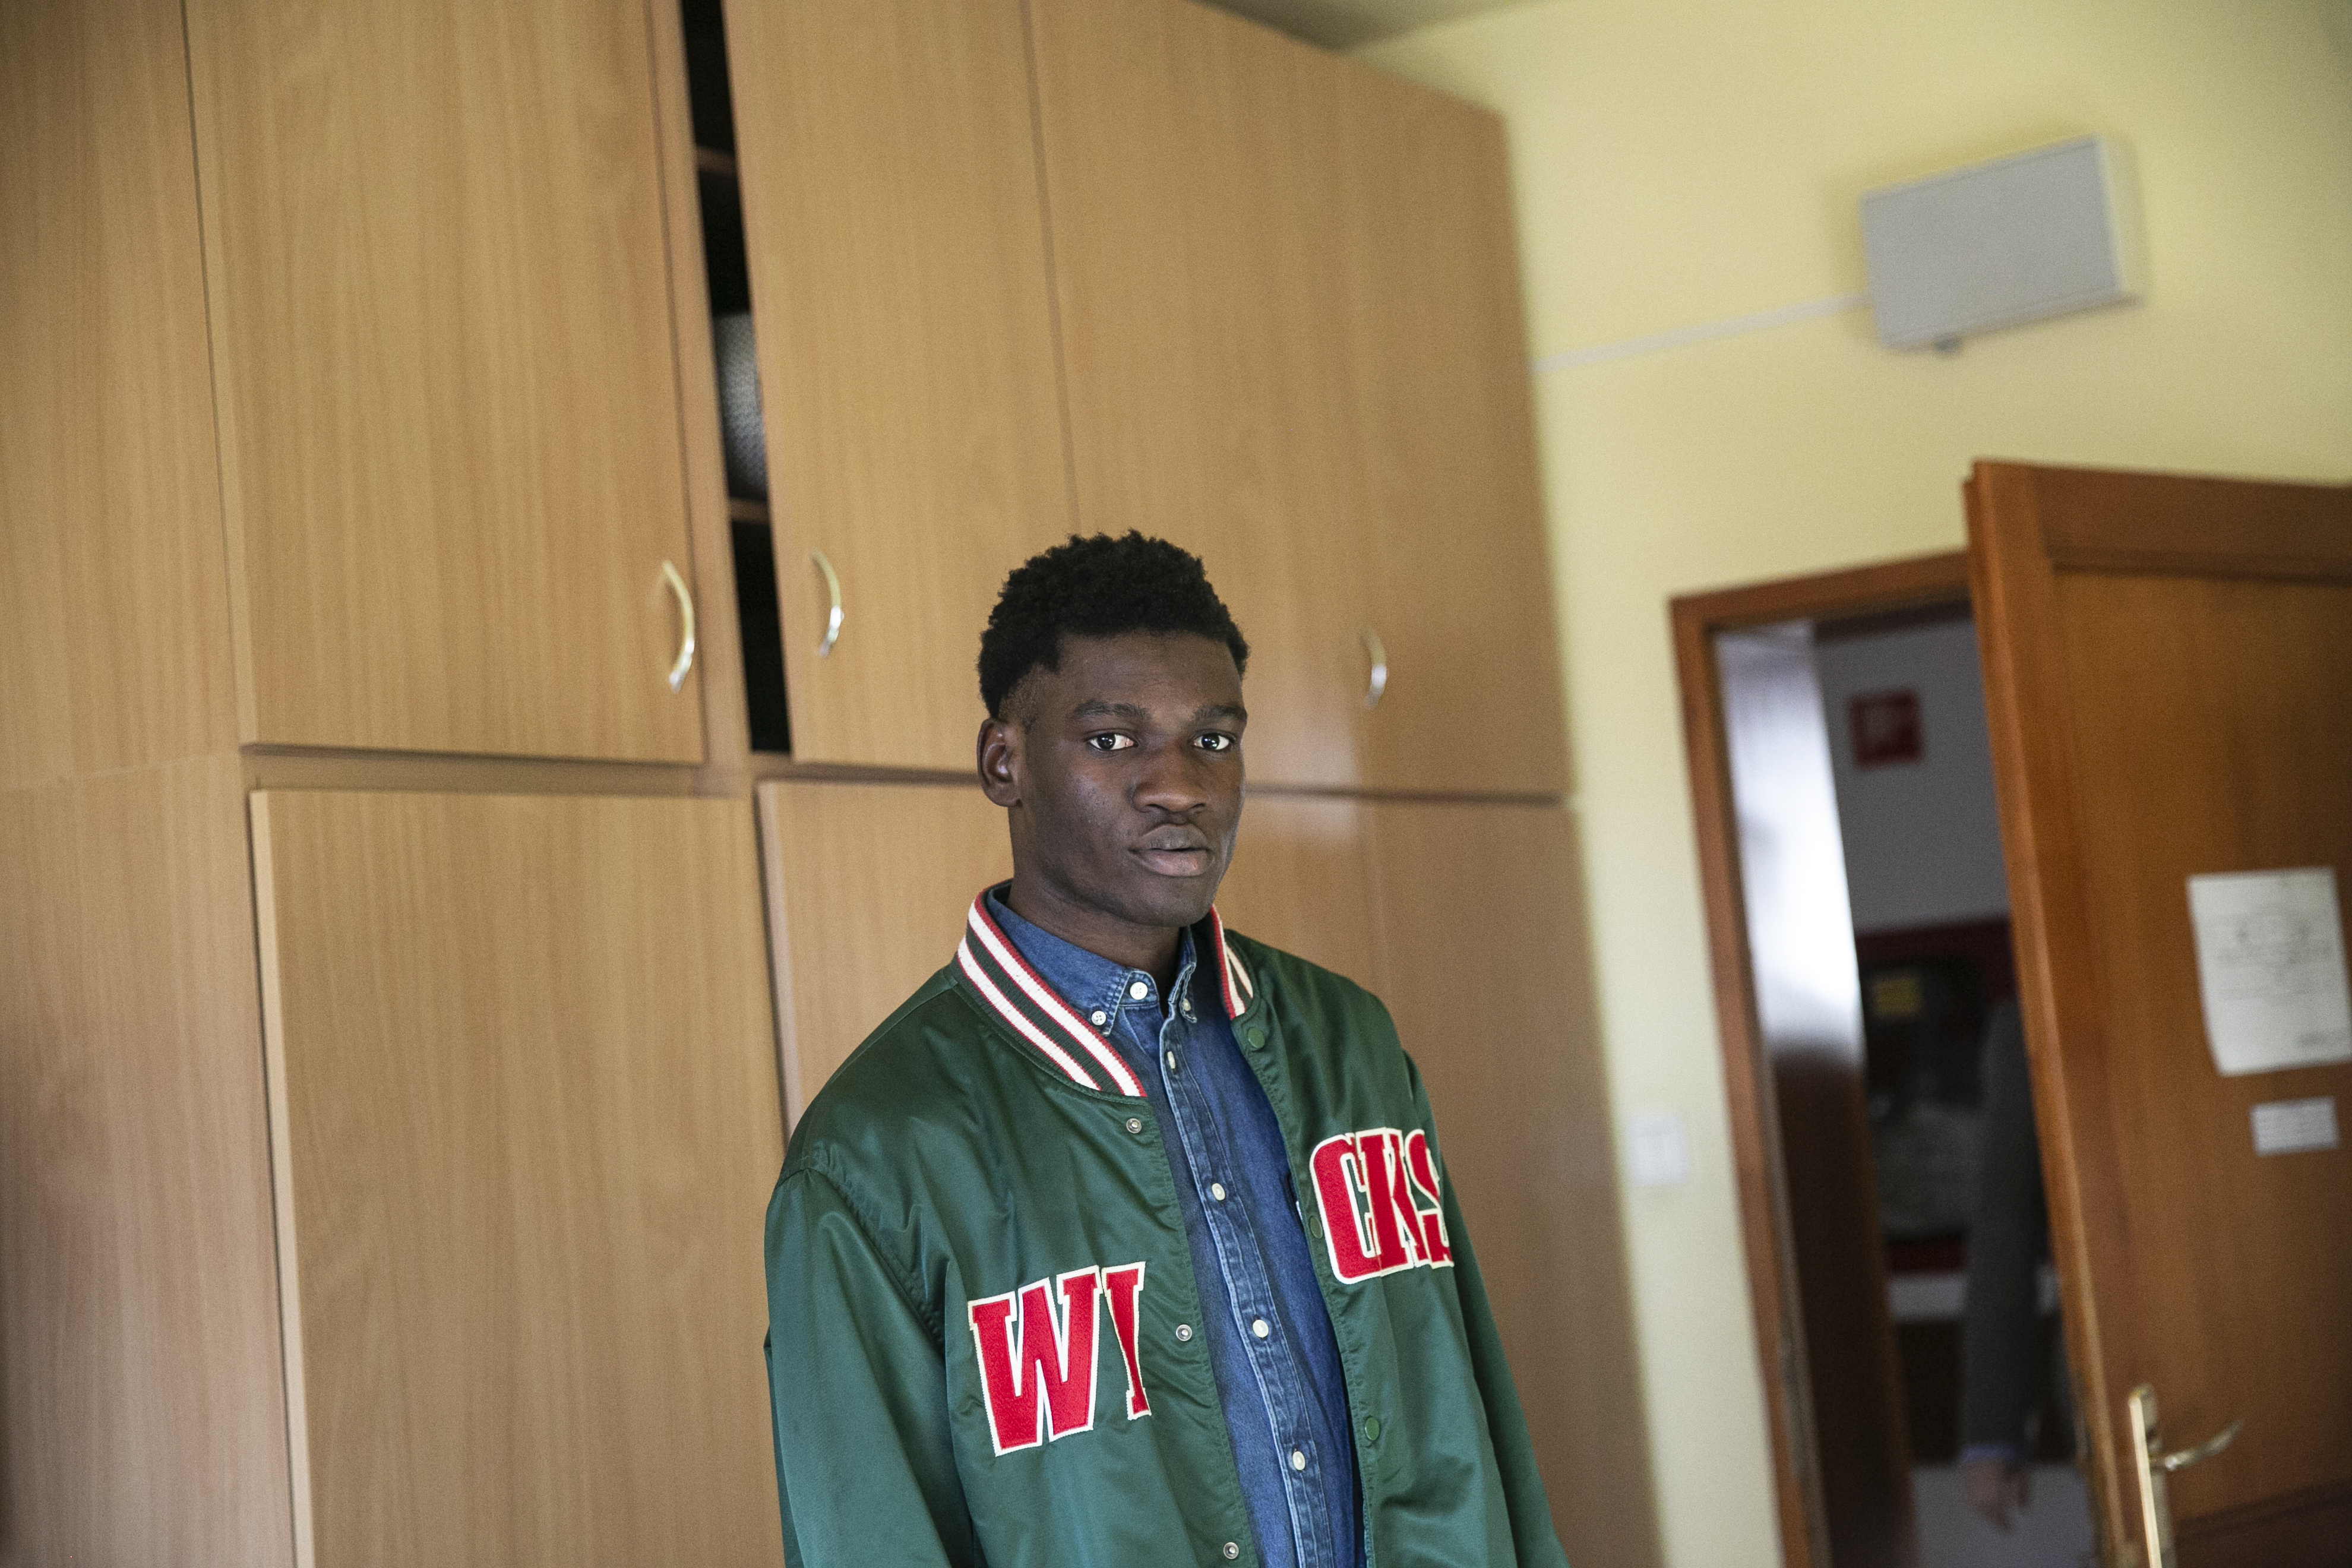 A családja már Franciaországban él, mégis magyar állampolgár szeretne lenni a kongói menekült fiú